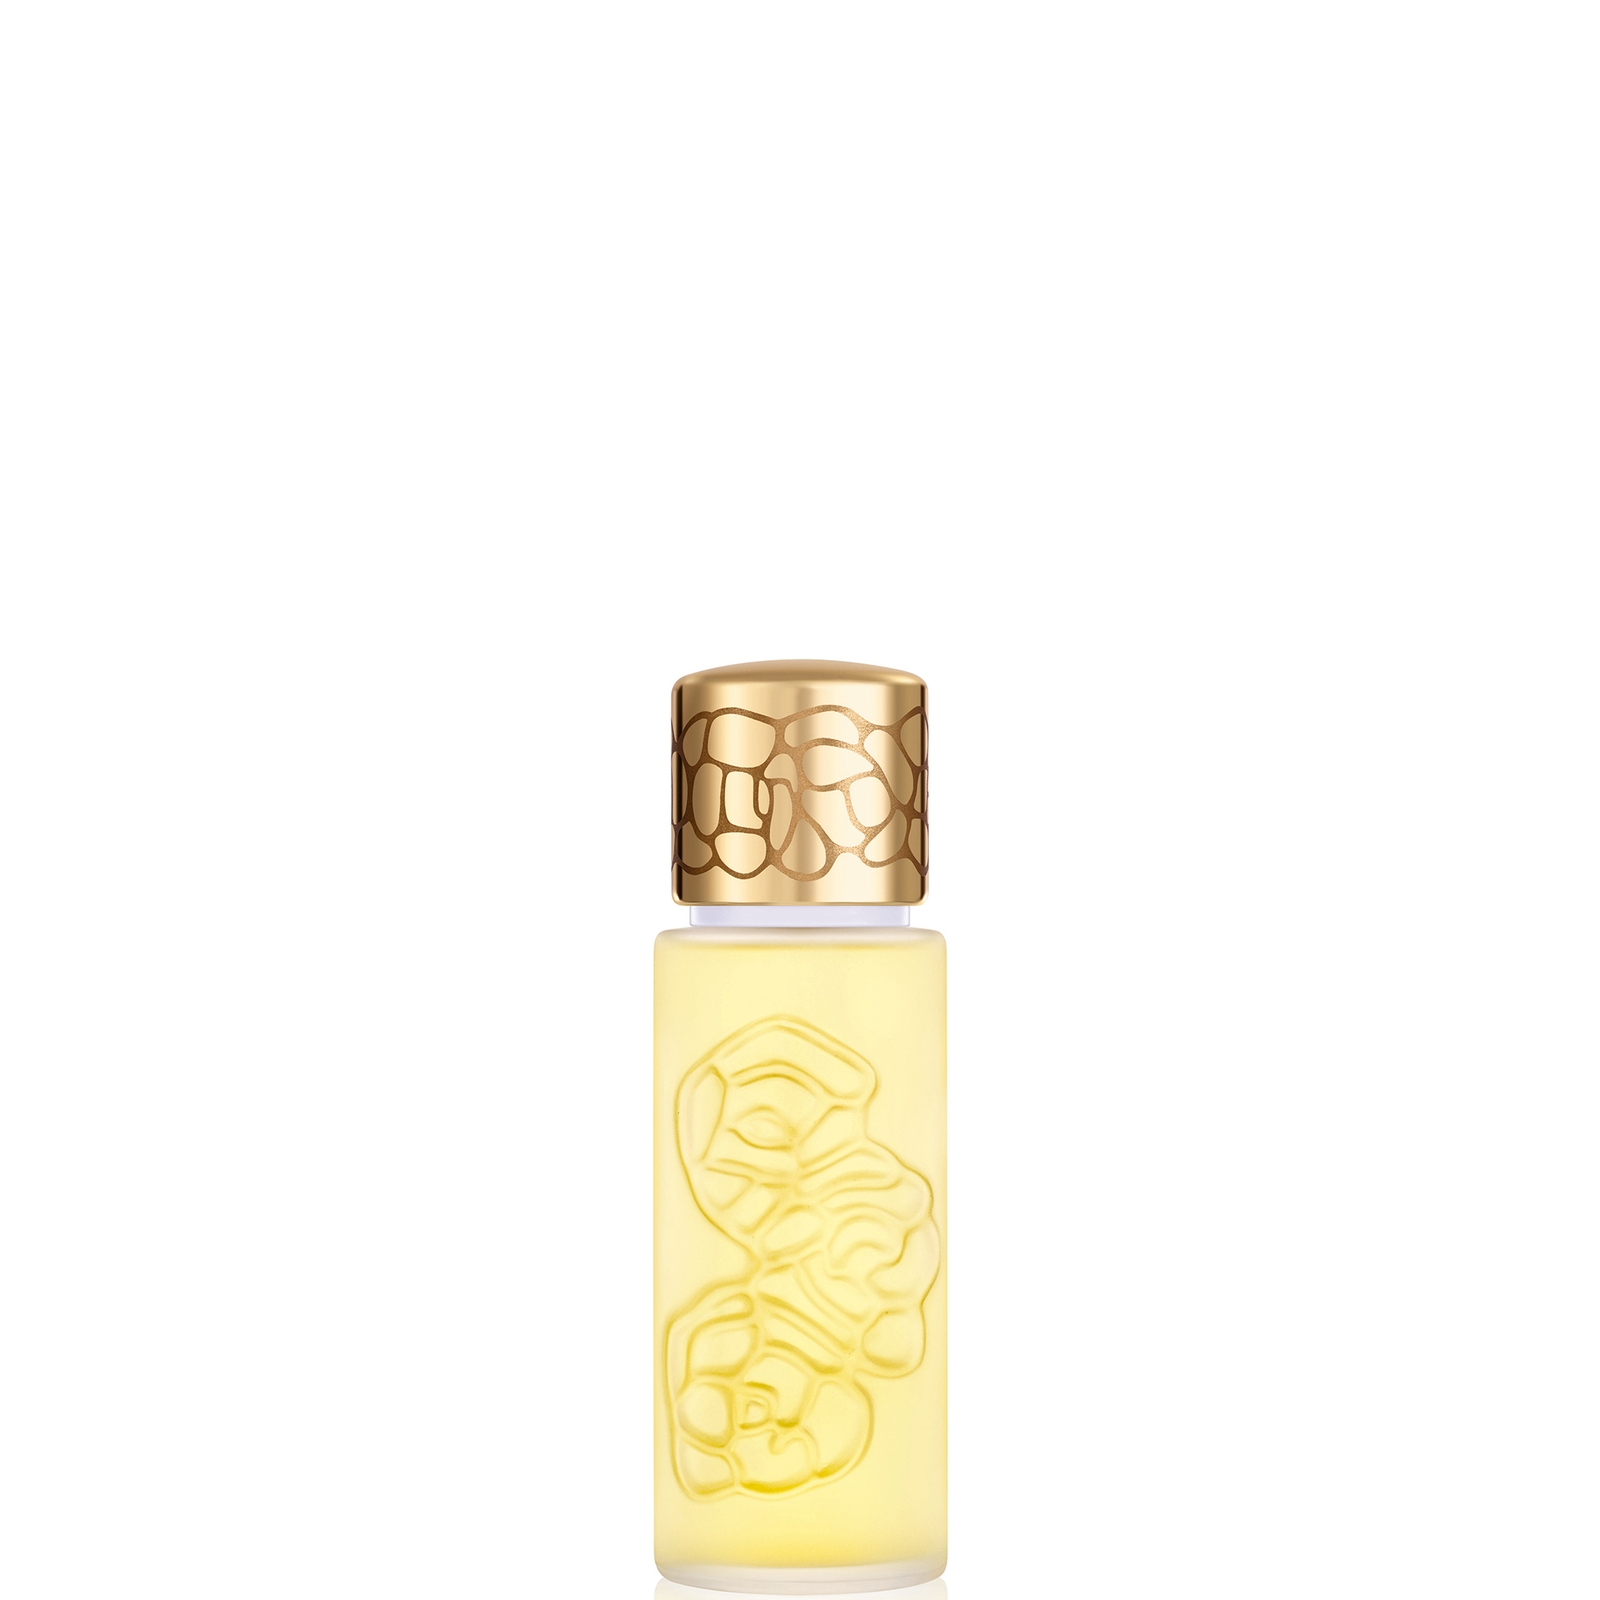 Photos - Women's Fragrance Houbigant Quelques Fleurs Original Eau de Parfum Spray 30ml 1572 